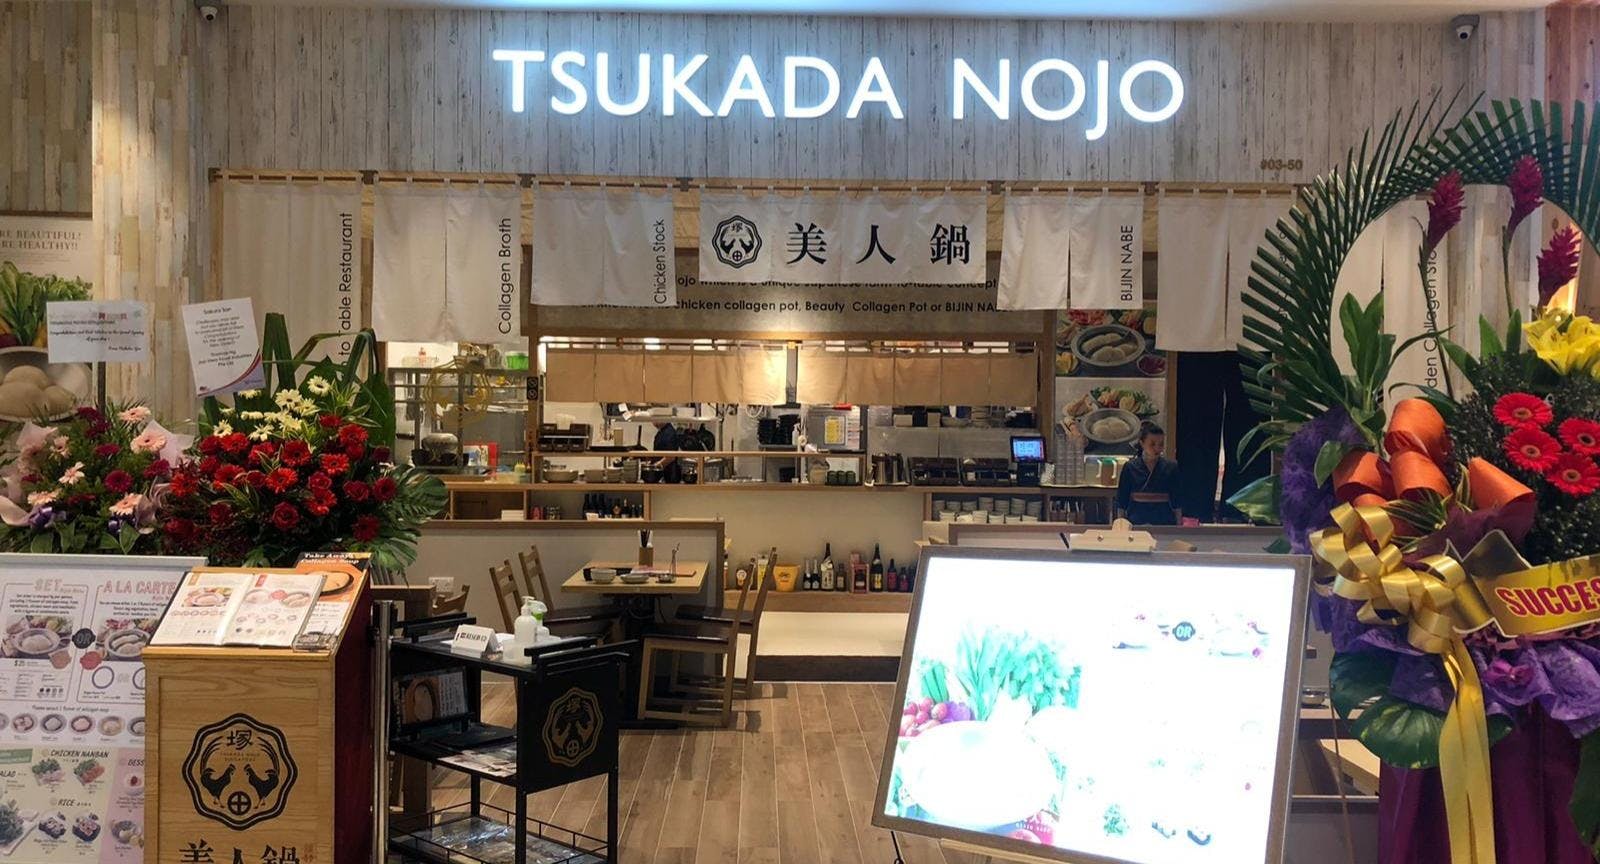 Photo of restaurant Tsukada Nojo - Thomson Plaza in Upper Thomson, Singapore